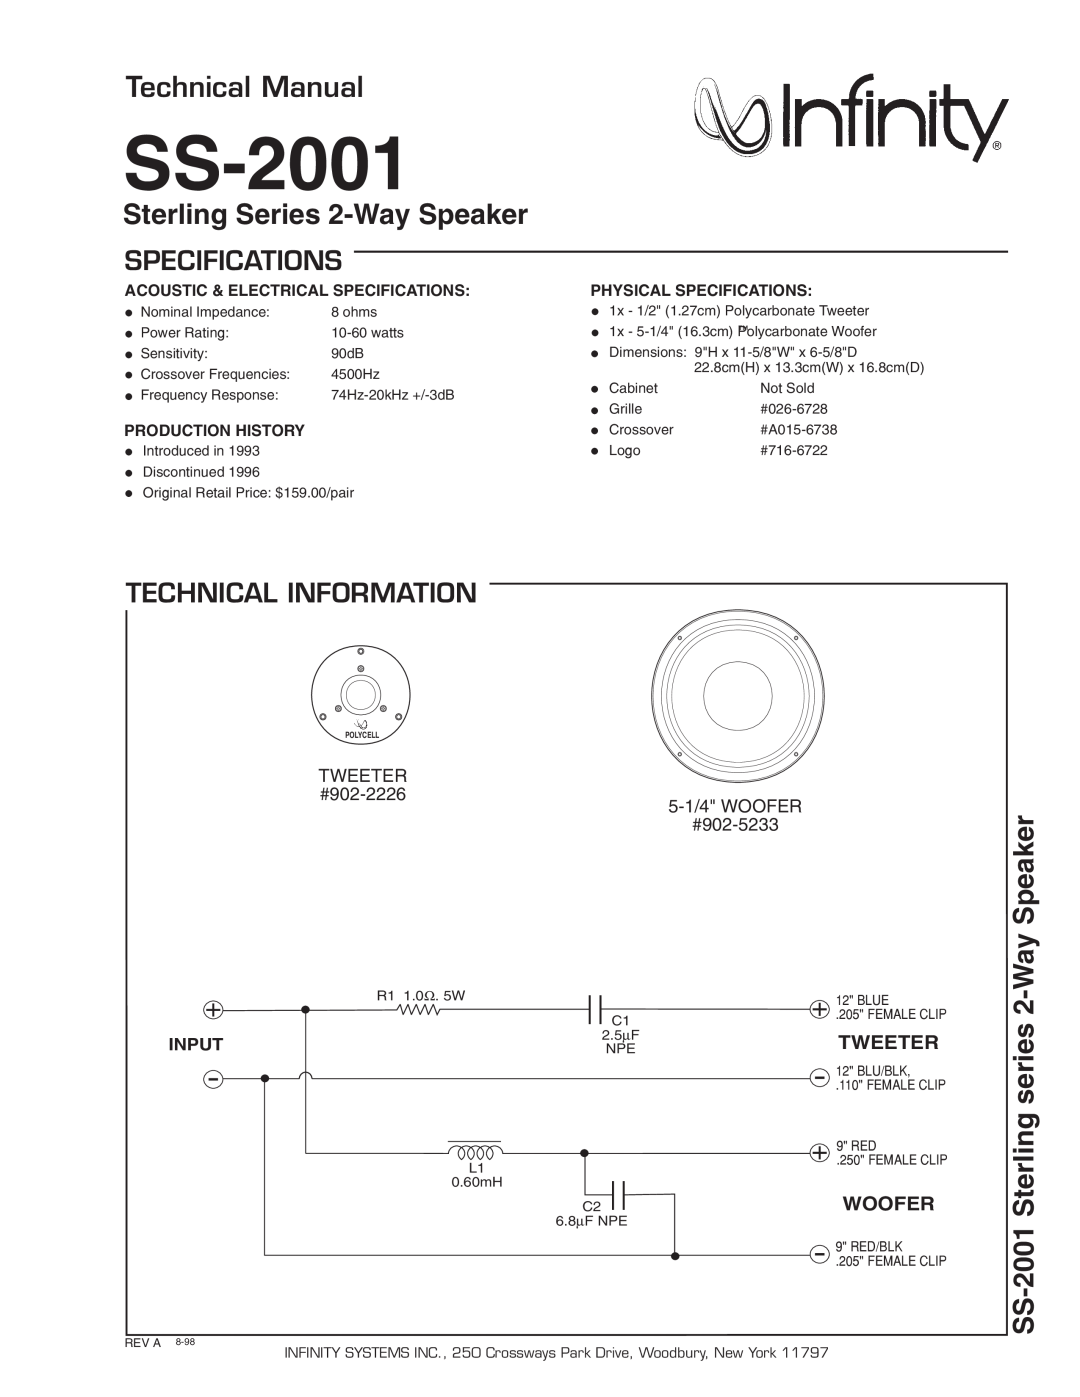 Infinity SS 2001 technical manual SS-2001, Technical Manual, Sterling Series 2-WaySpeaker, series 2-WaySpeaker, Tweeter 